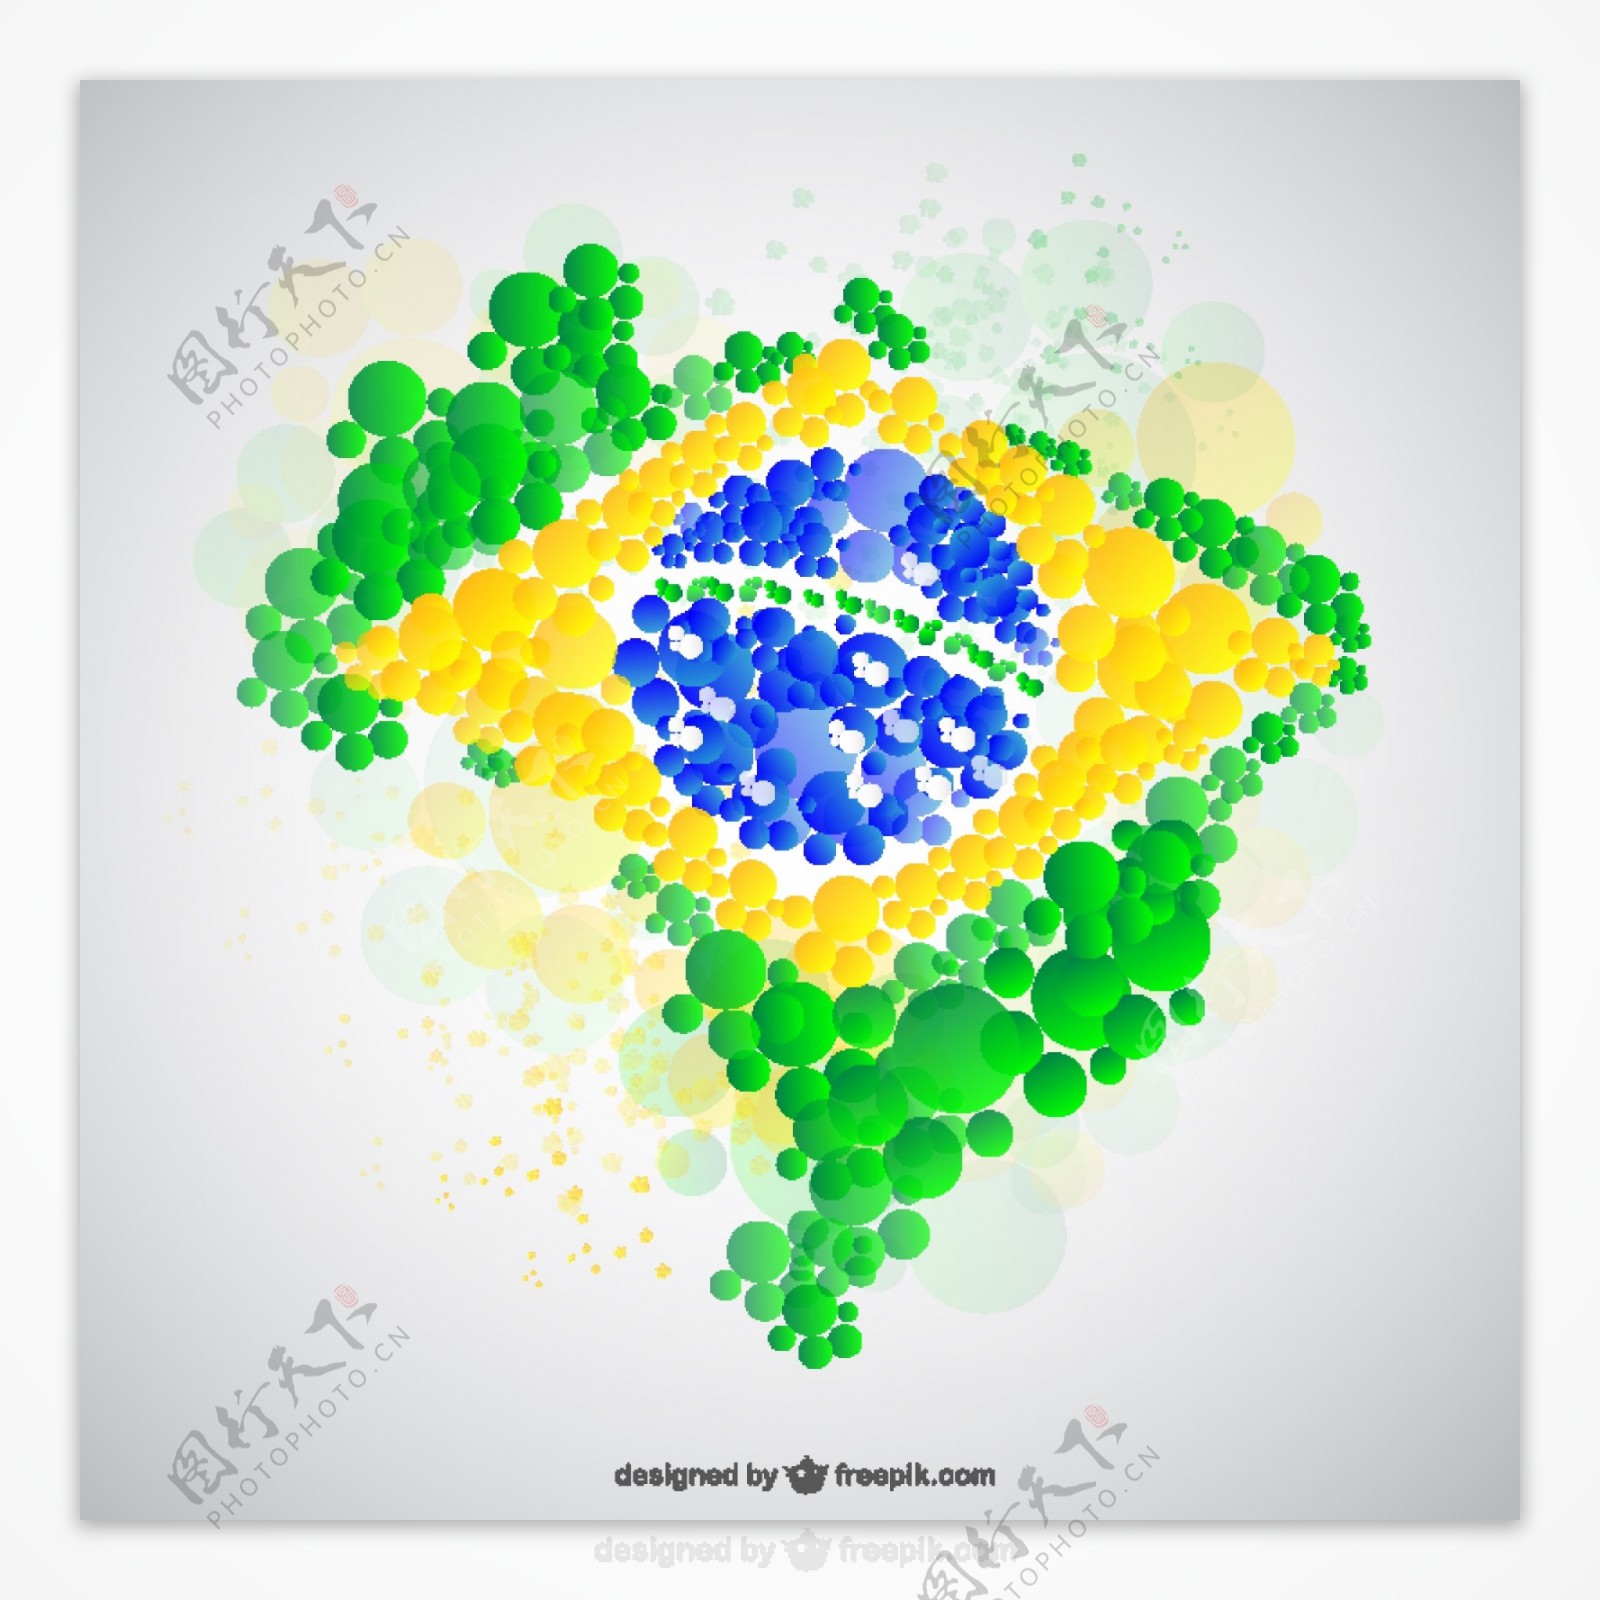 巴西地图制造的泡沫